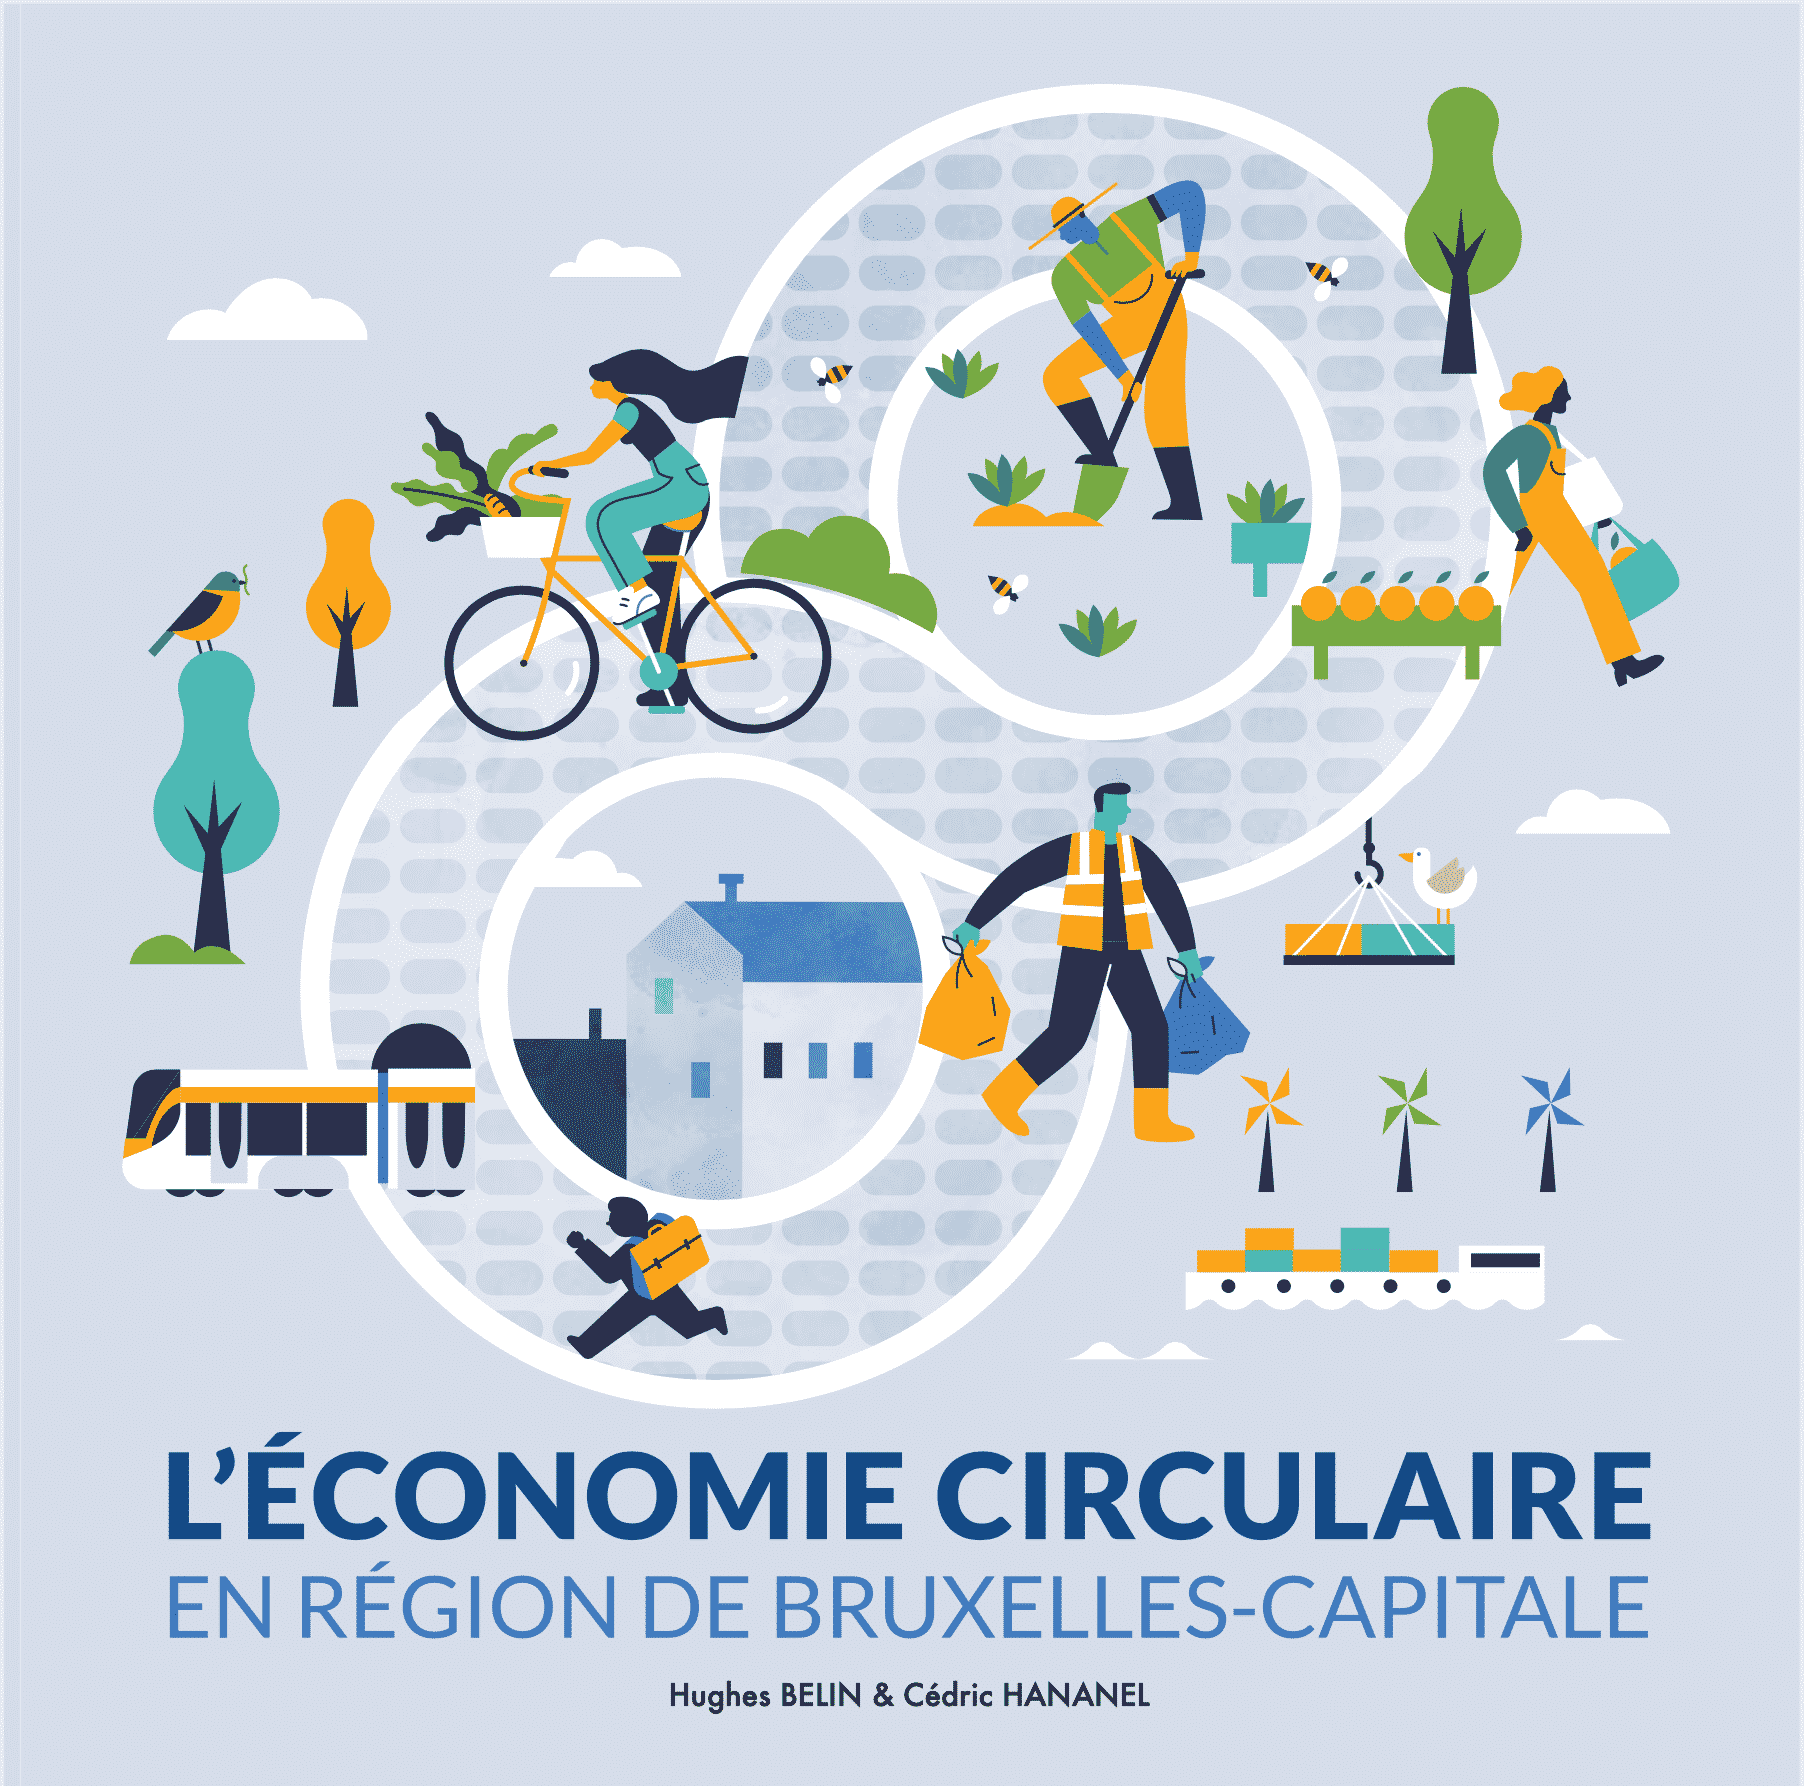 “L’économie circulaire en Région de Bruxelles-Capitale”